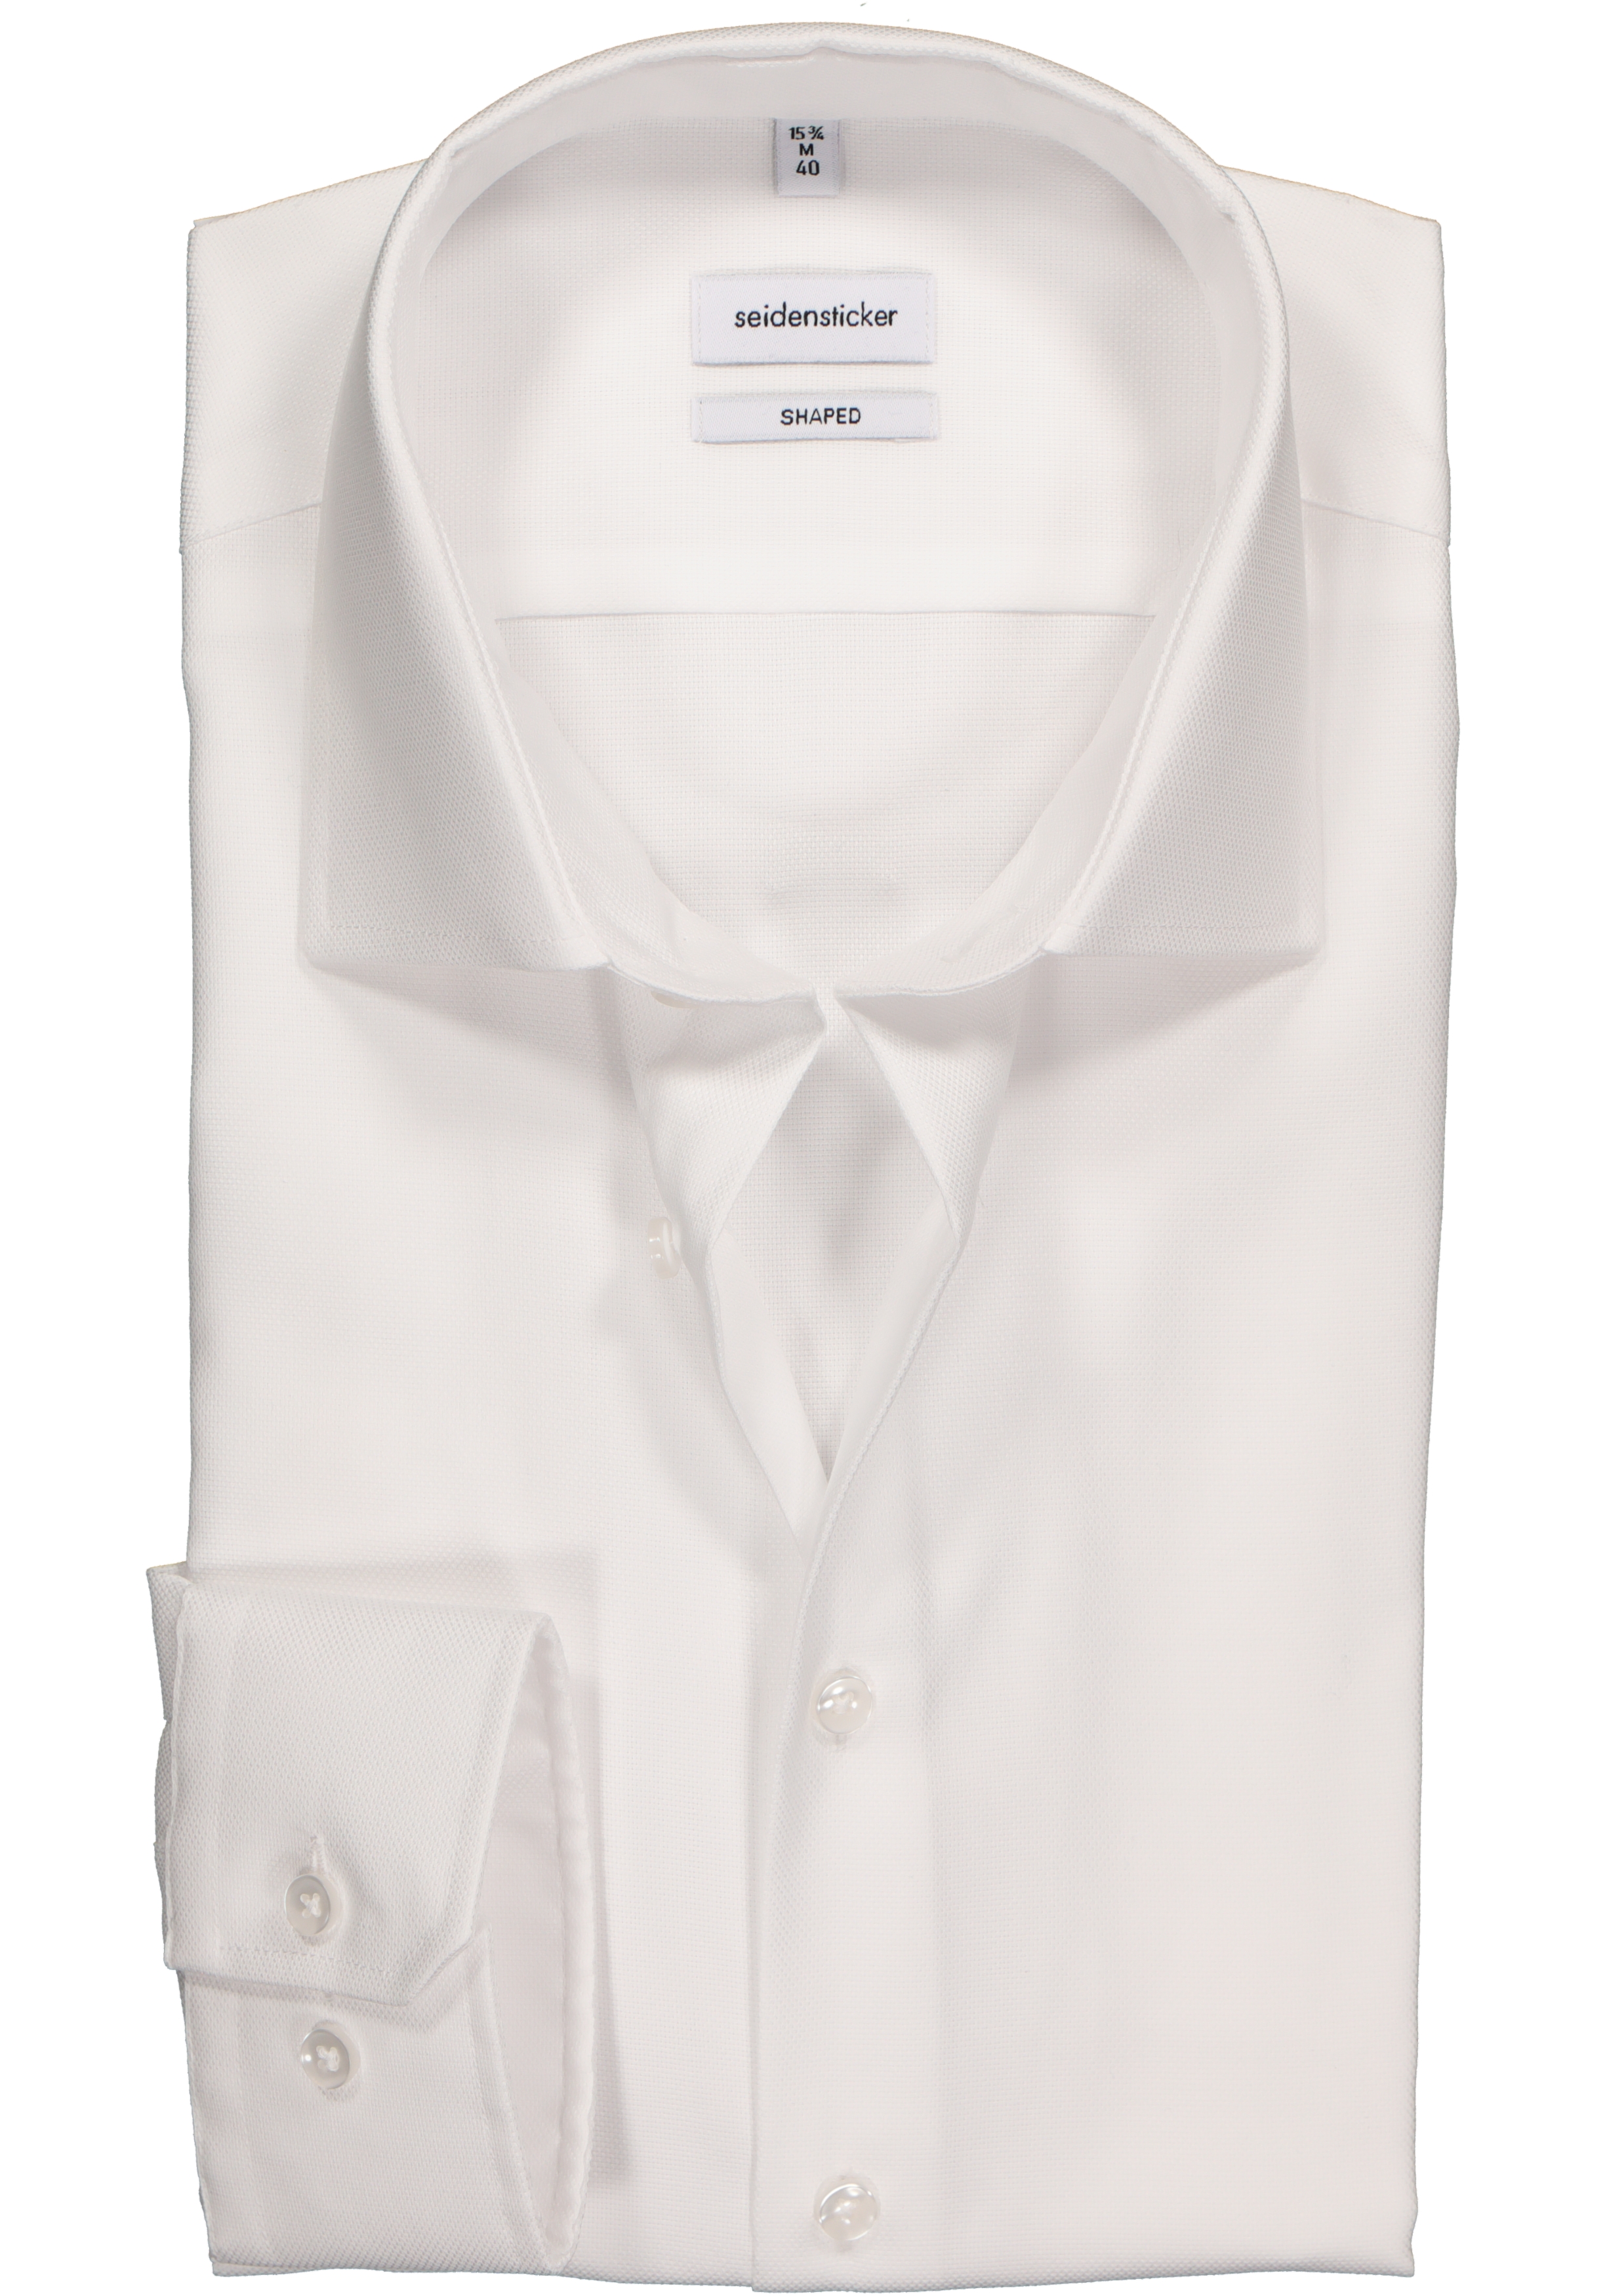 Seidensticker shaped fit overhemd, wit structuur 